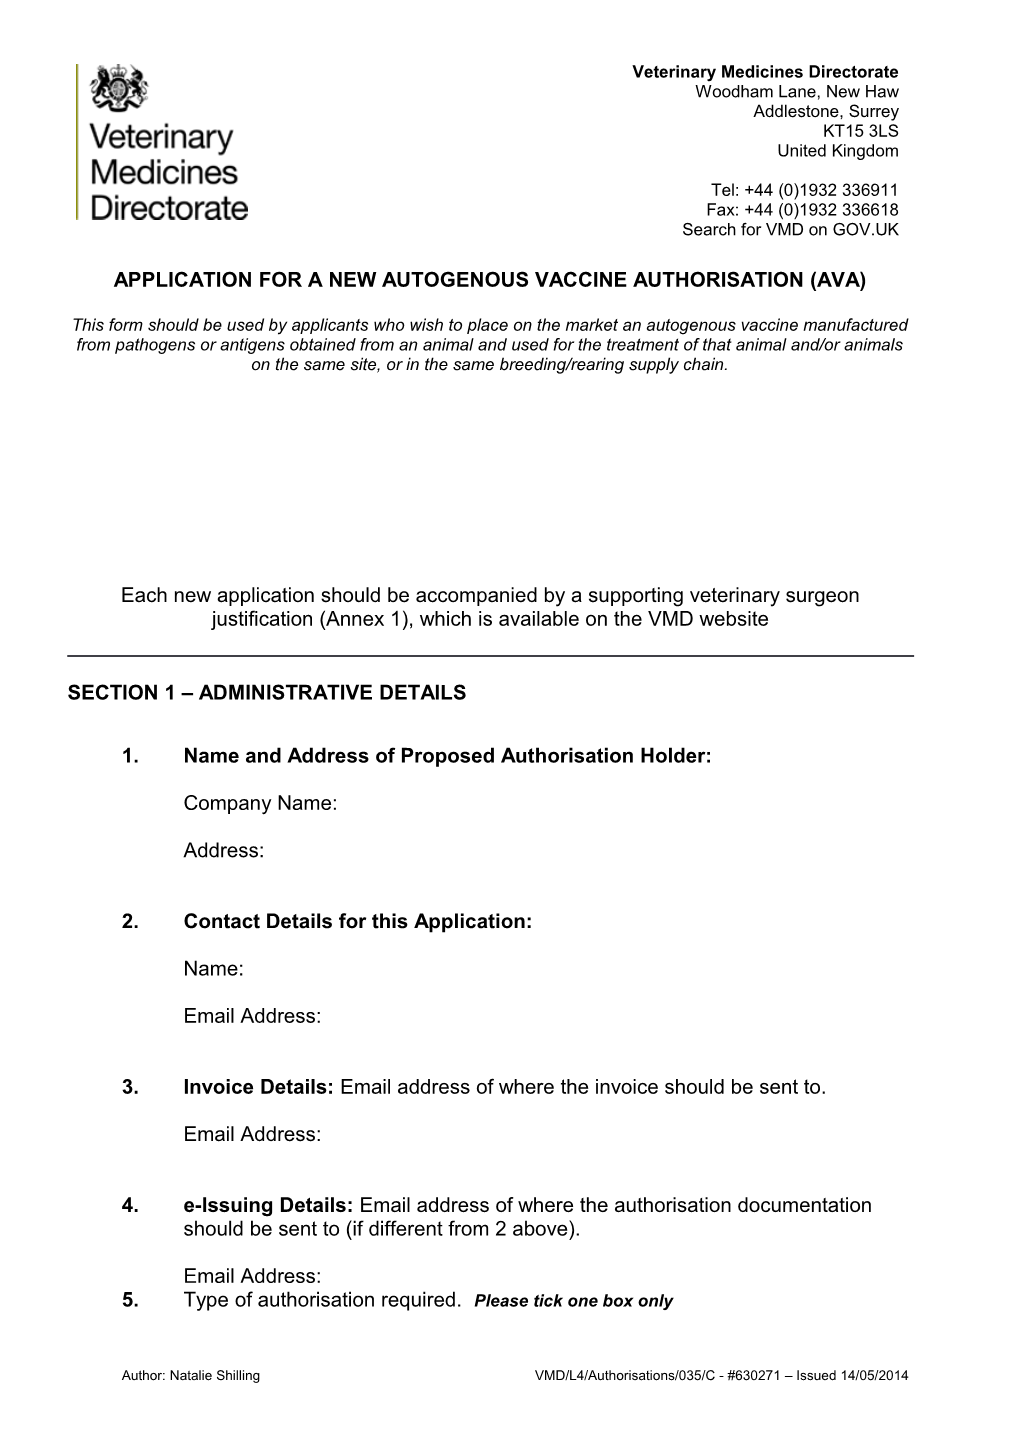 Autogenous Vaccine Authorisation - Variation Application Form